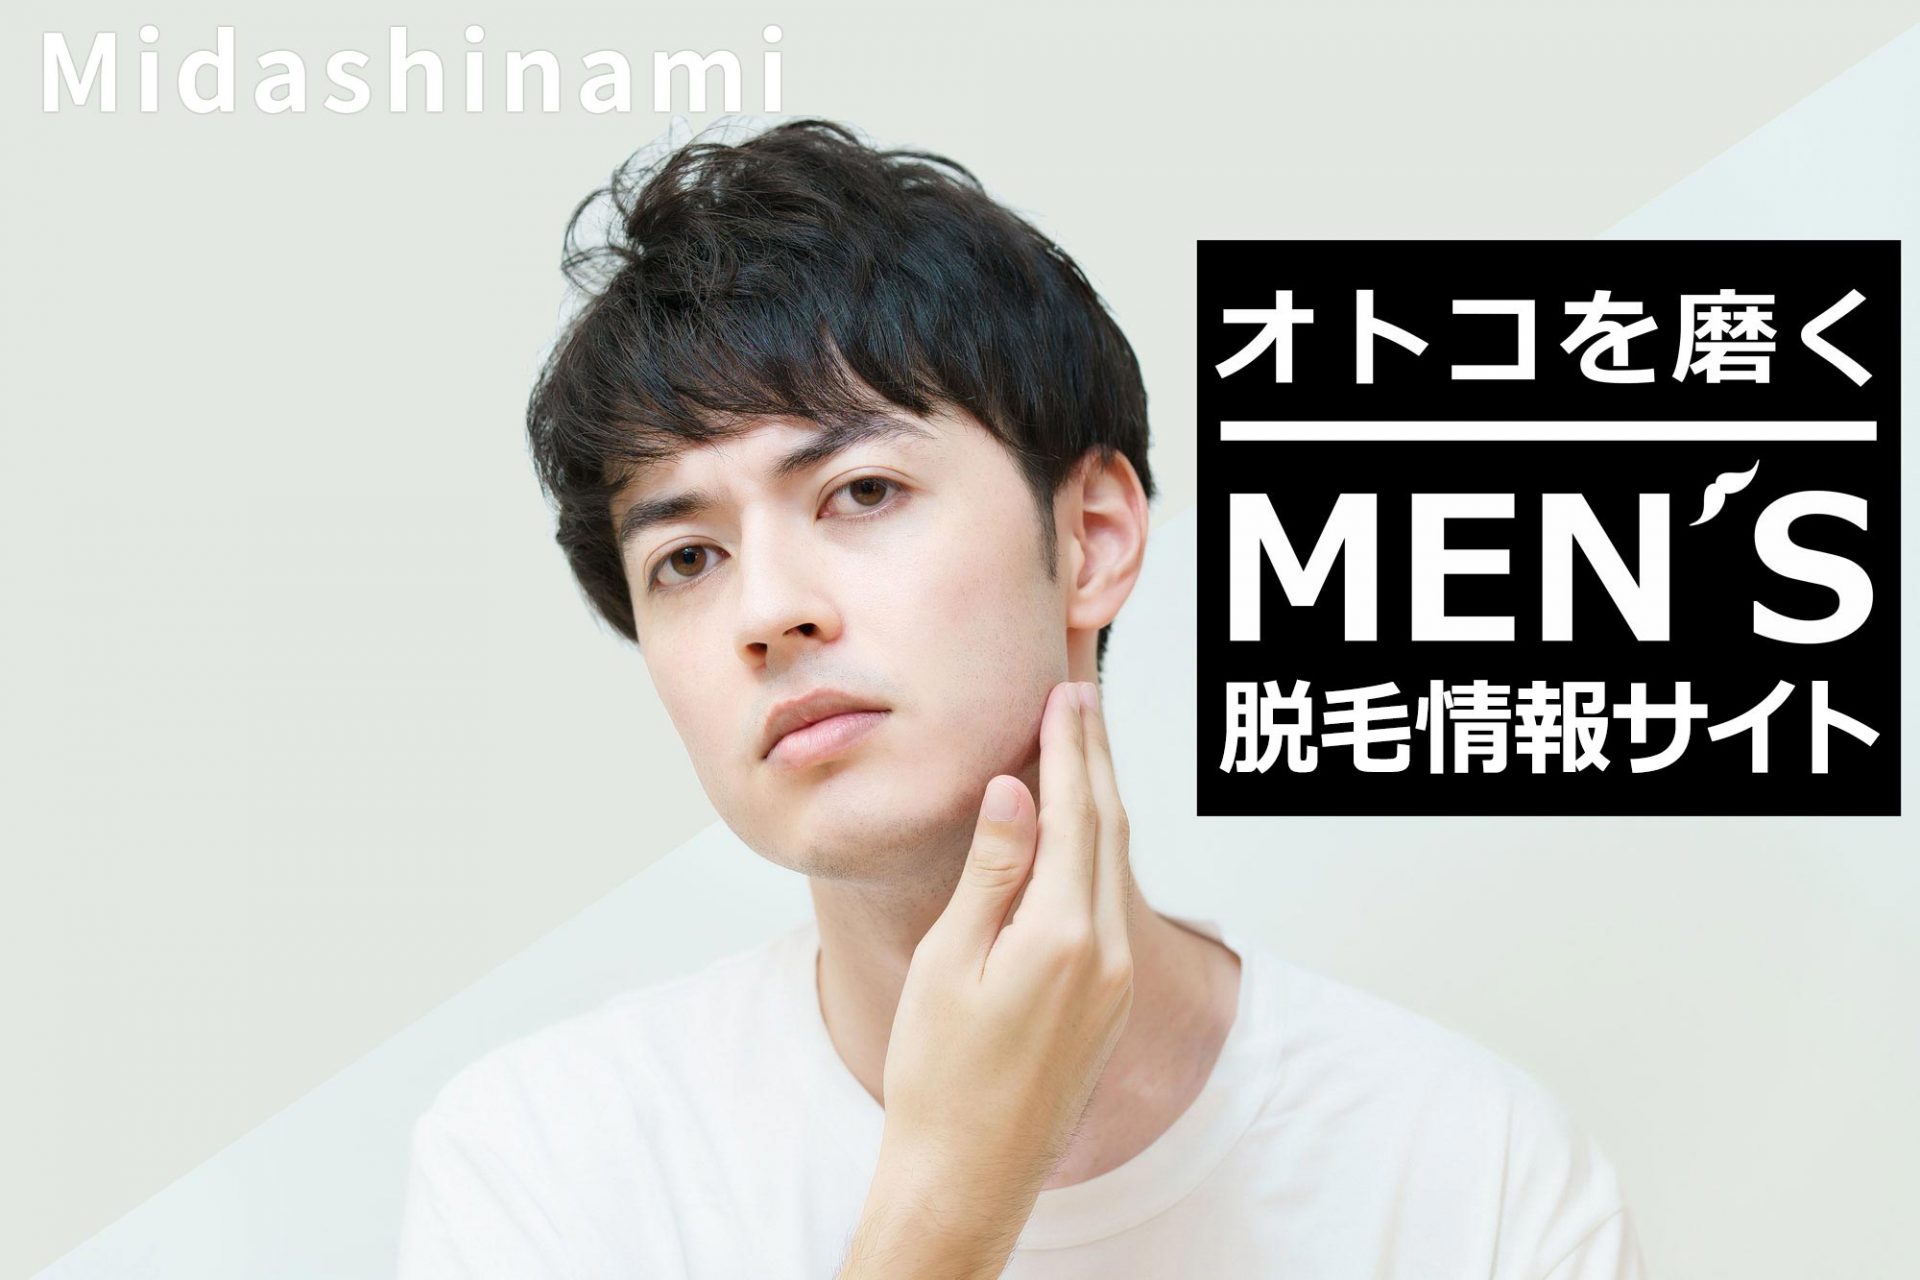 Midashinami 男を磨くMEN'S脱毛情報サイト